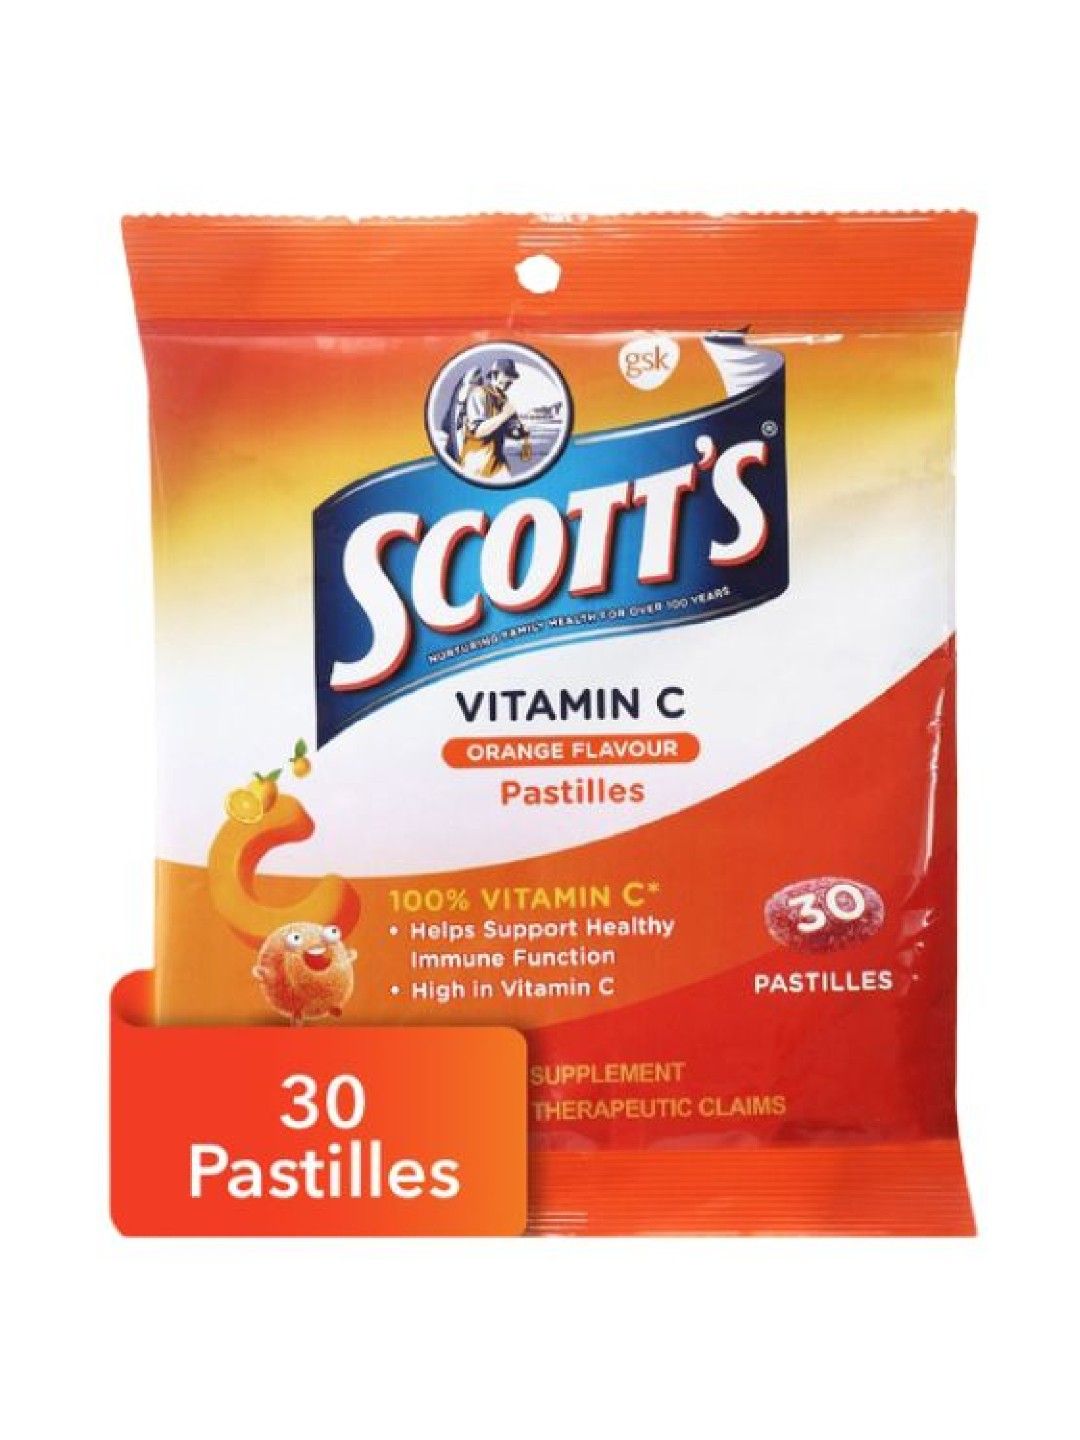 Scott's Vitamin C Pastilles Orange Flavour 30s